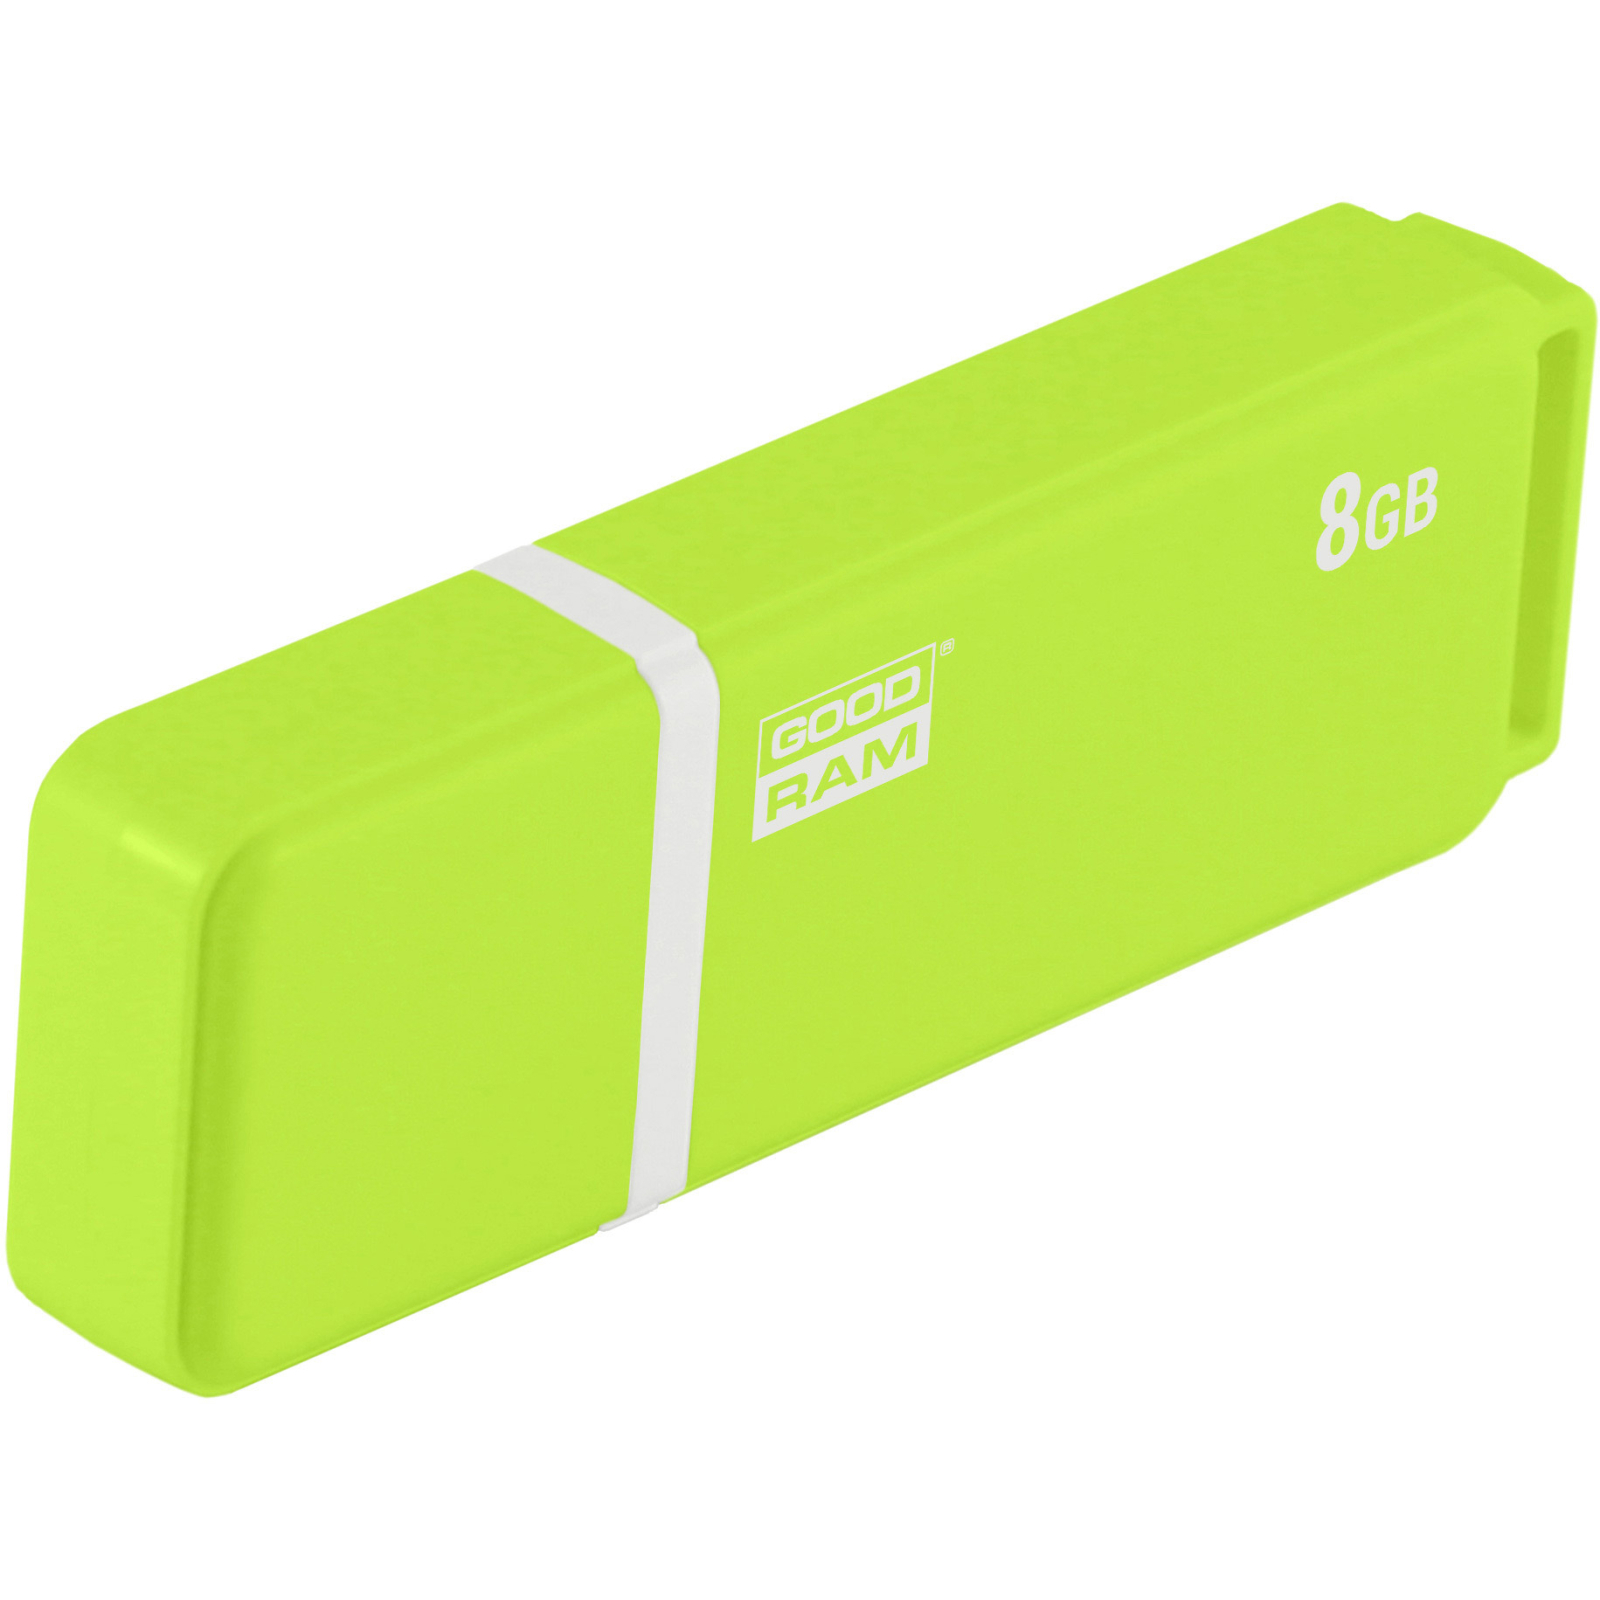 USB флеш накопитель Goodram 64GB UMO2 Orange Green USB 2.0 (UMO2-0640OGR11) изображение 2